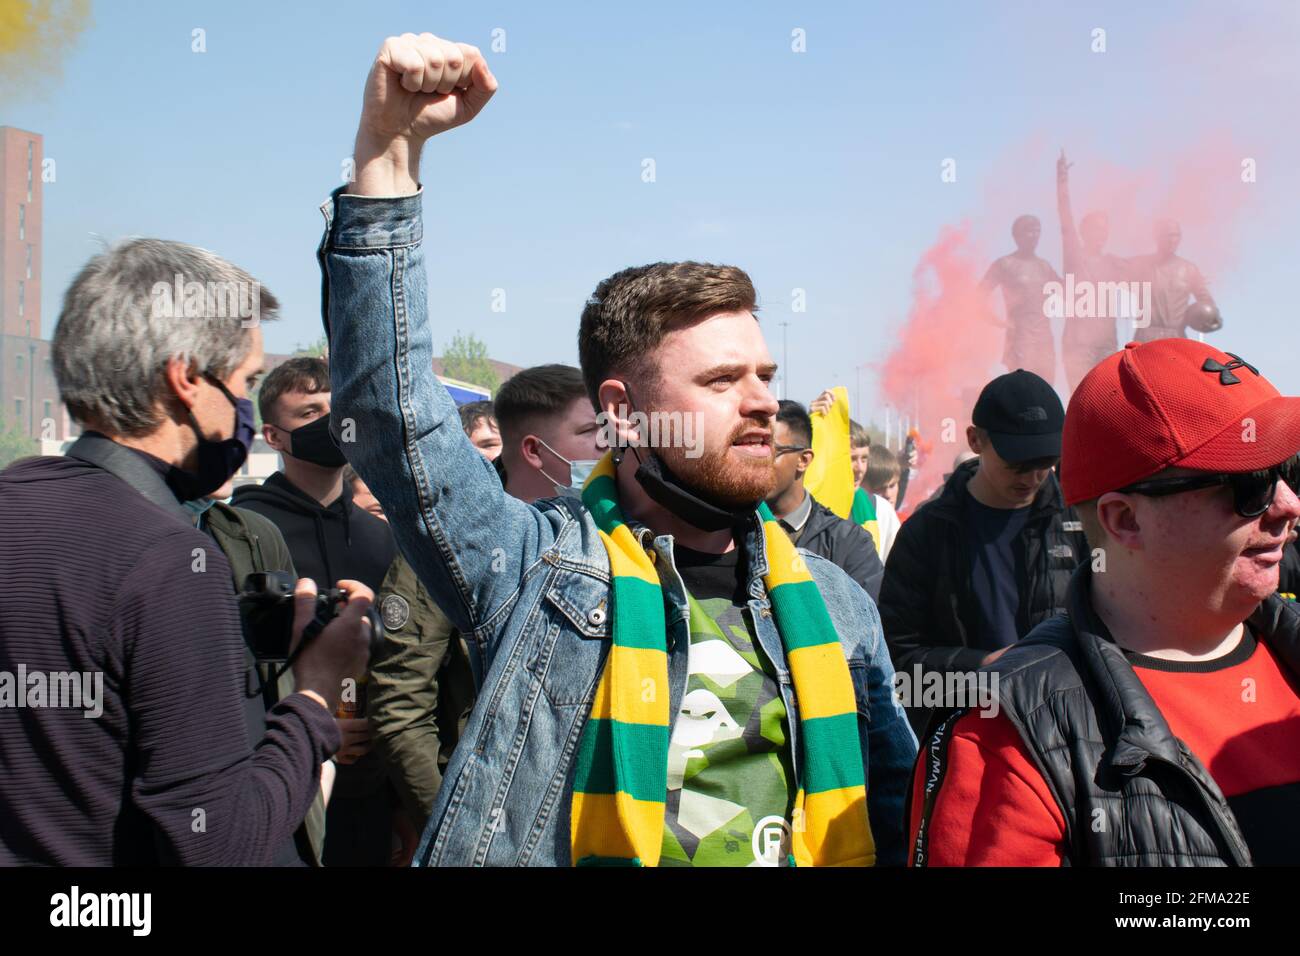 Protestation contre Glazer sur le terrain de football d'Old Trafford. Supporter tenant le poing vers le haut et portant une écharpe verte et or Banque D'Images